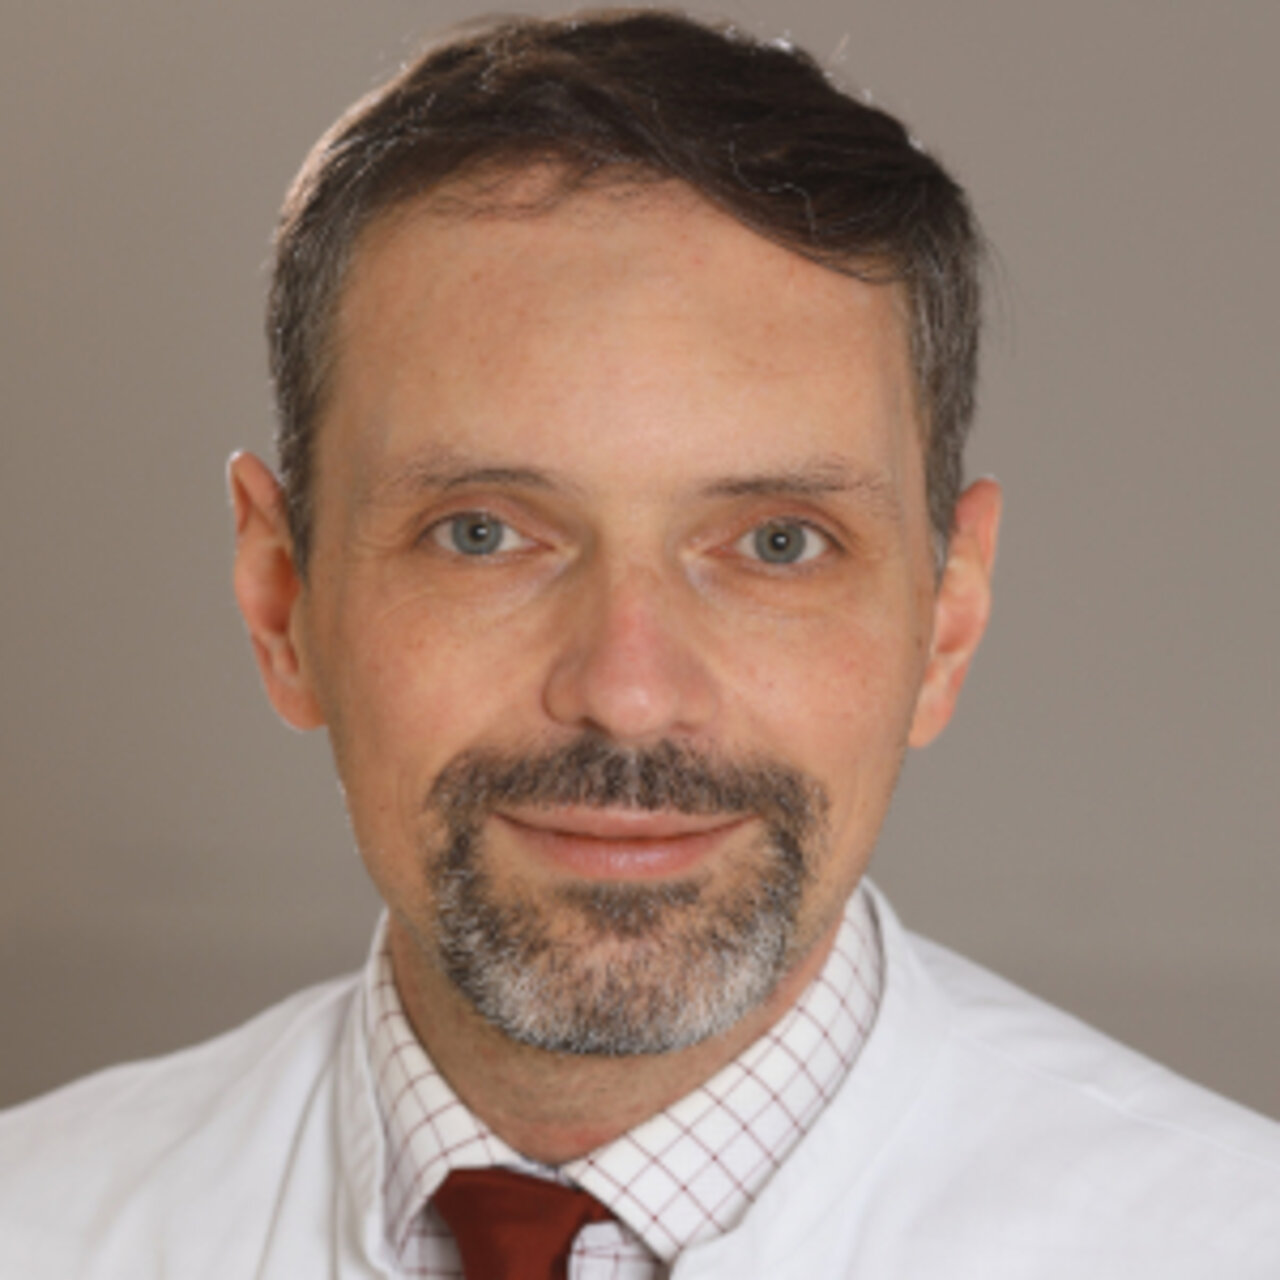 PD Dr méd. Christian Arsov - Spécialiste de Cancer de la prostate - Portrait